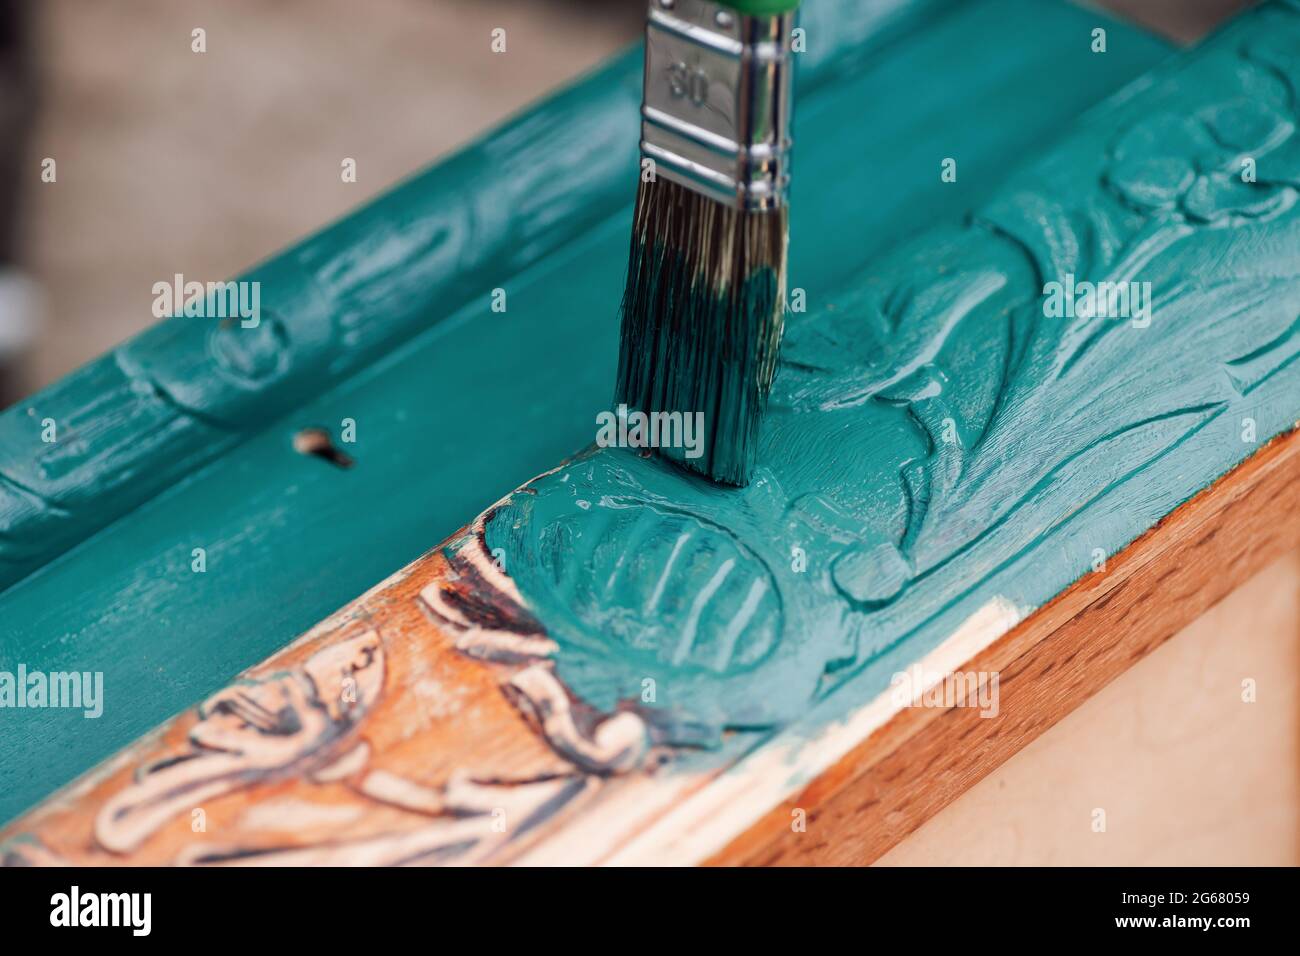 pinceau avec peinture bleue ou verte macro peinture vieux mobilier en bois pour la réutilisation, le style de vie écologique Banque D'Images